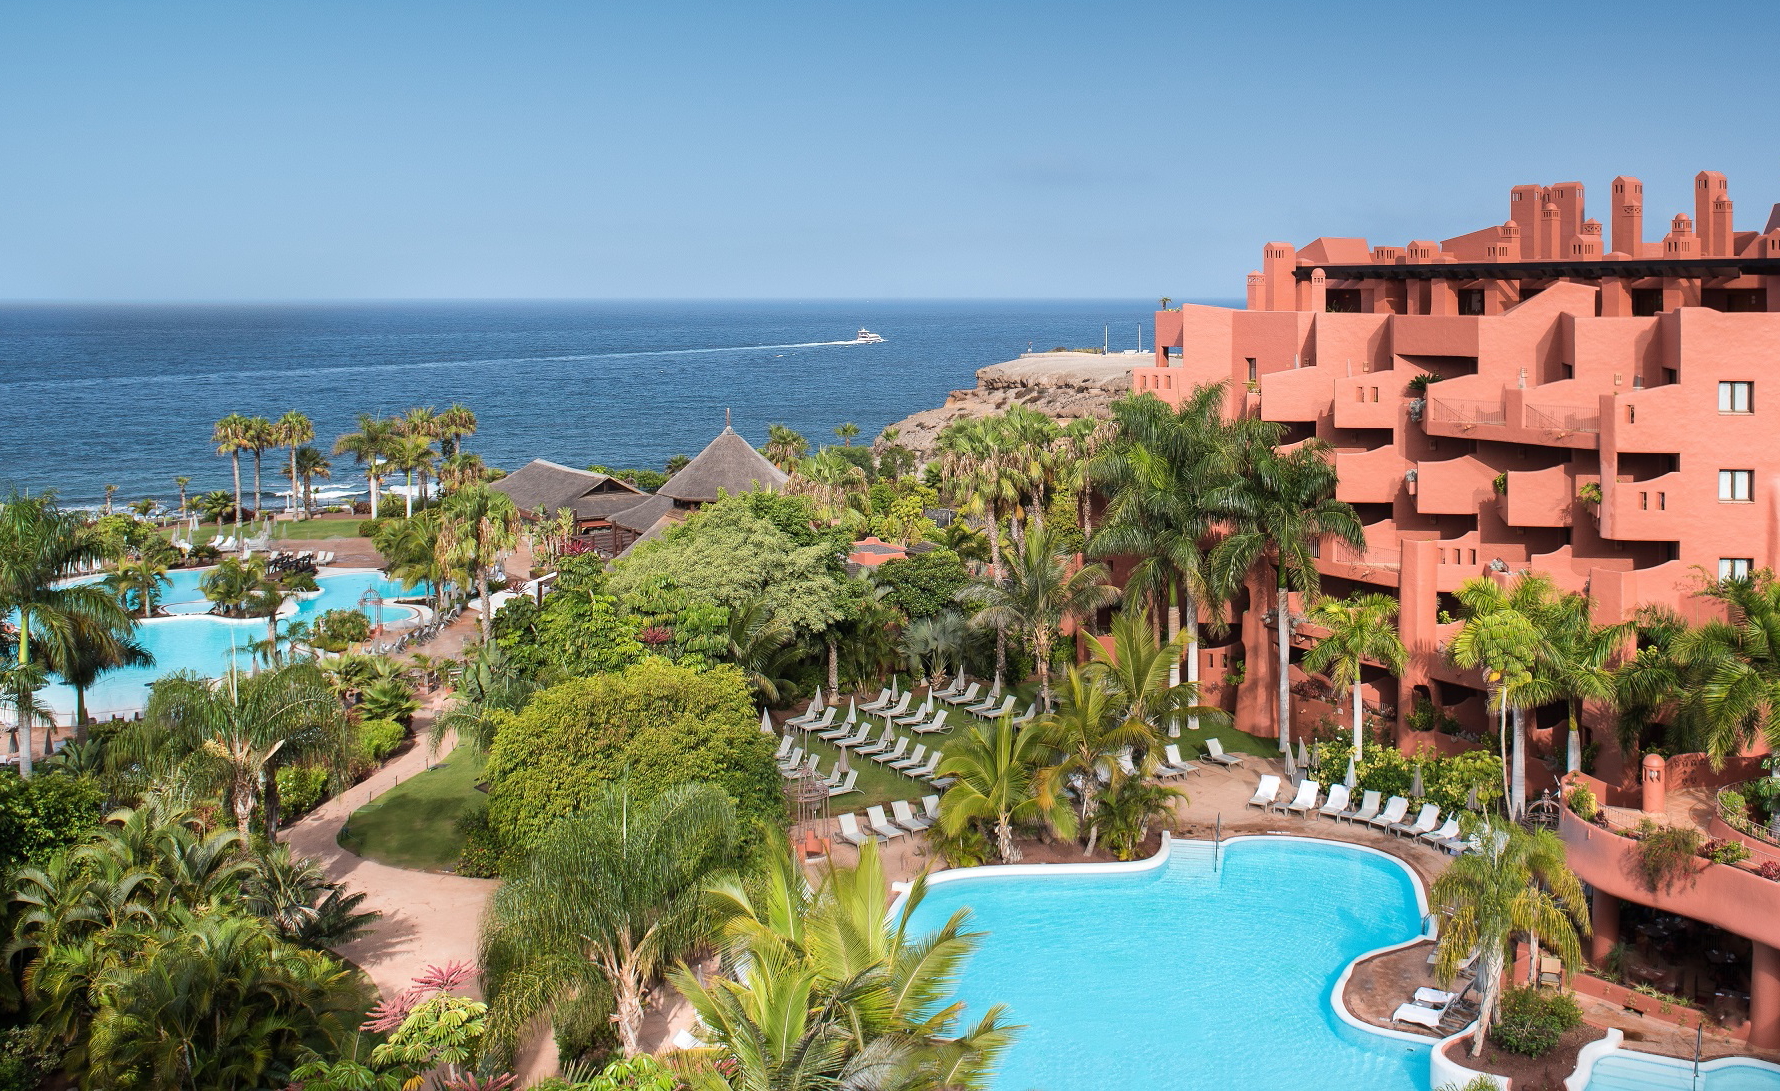 The hotel will be rebranded as Tivoli La Caleta Resort in spring 2023. Click to enlarge.